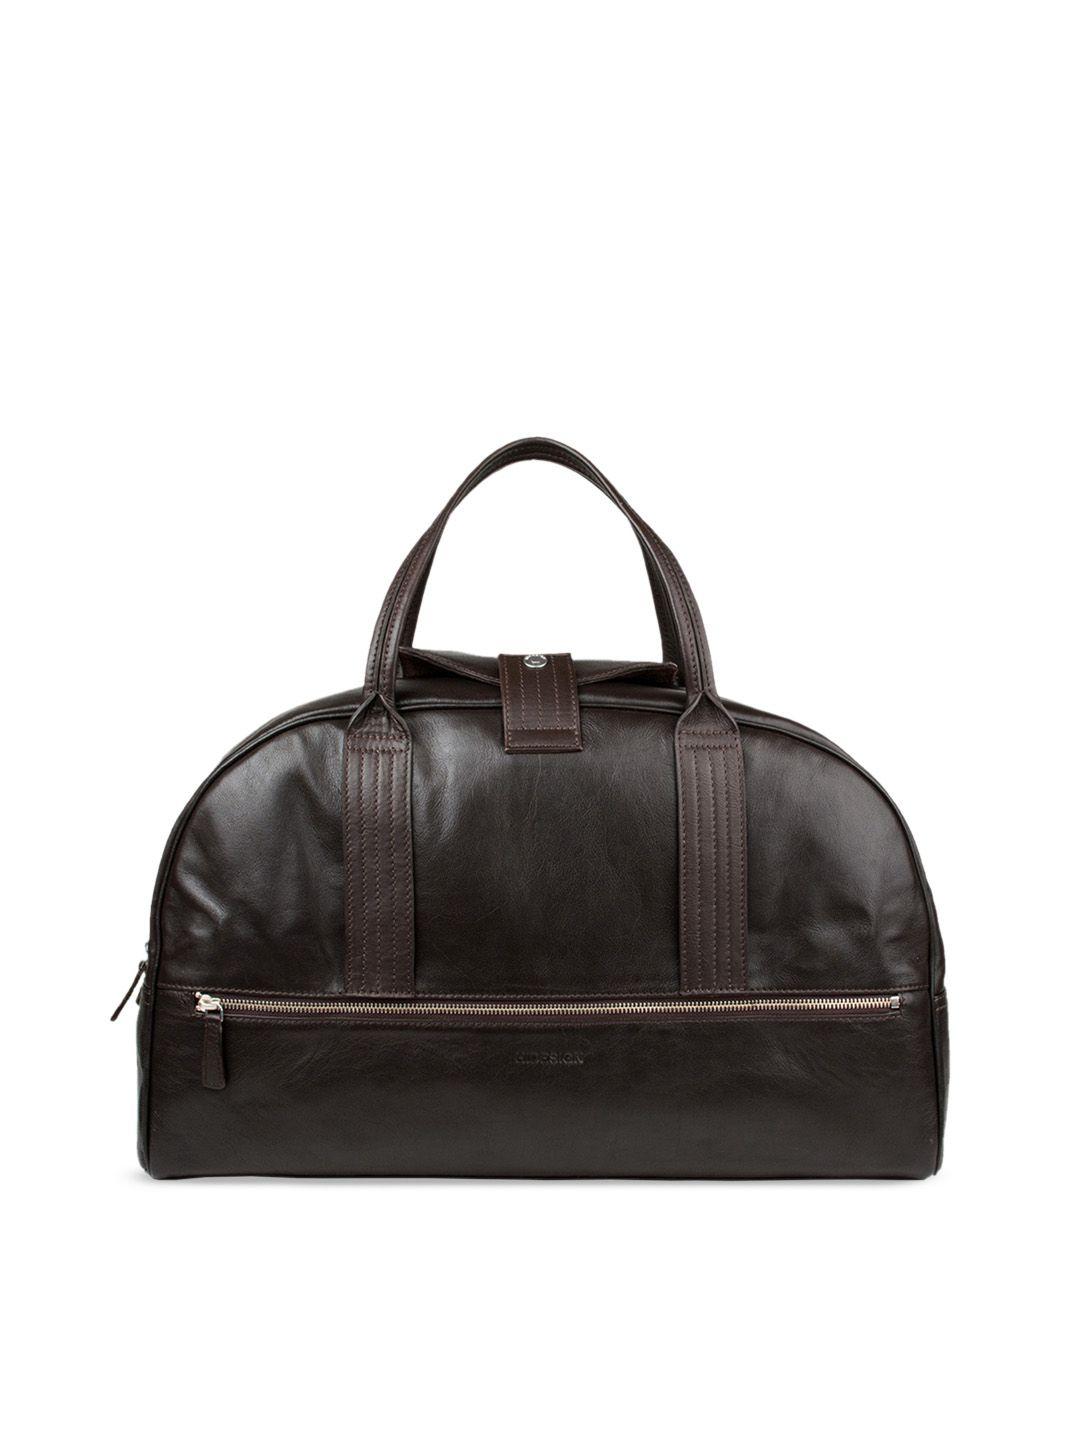 hidesign men brown solid vegas leather duffel bag